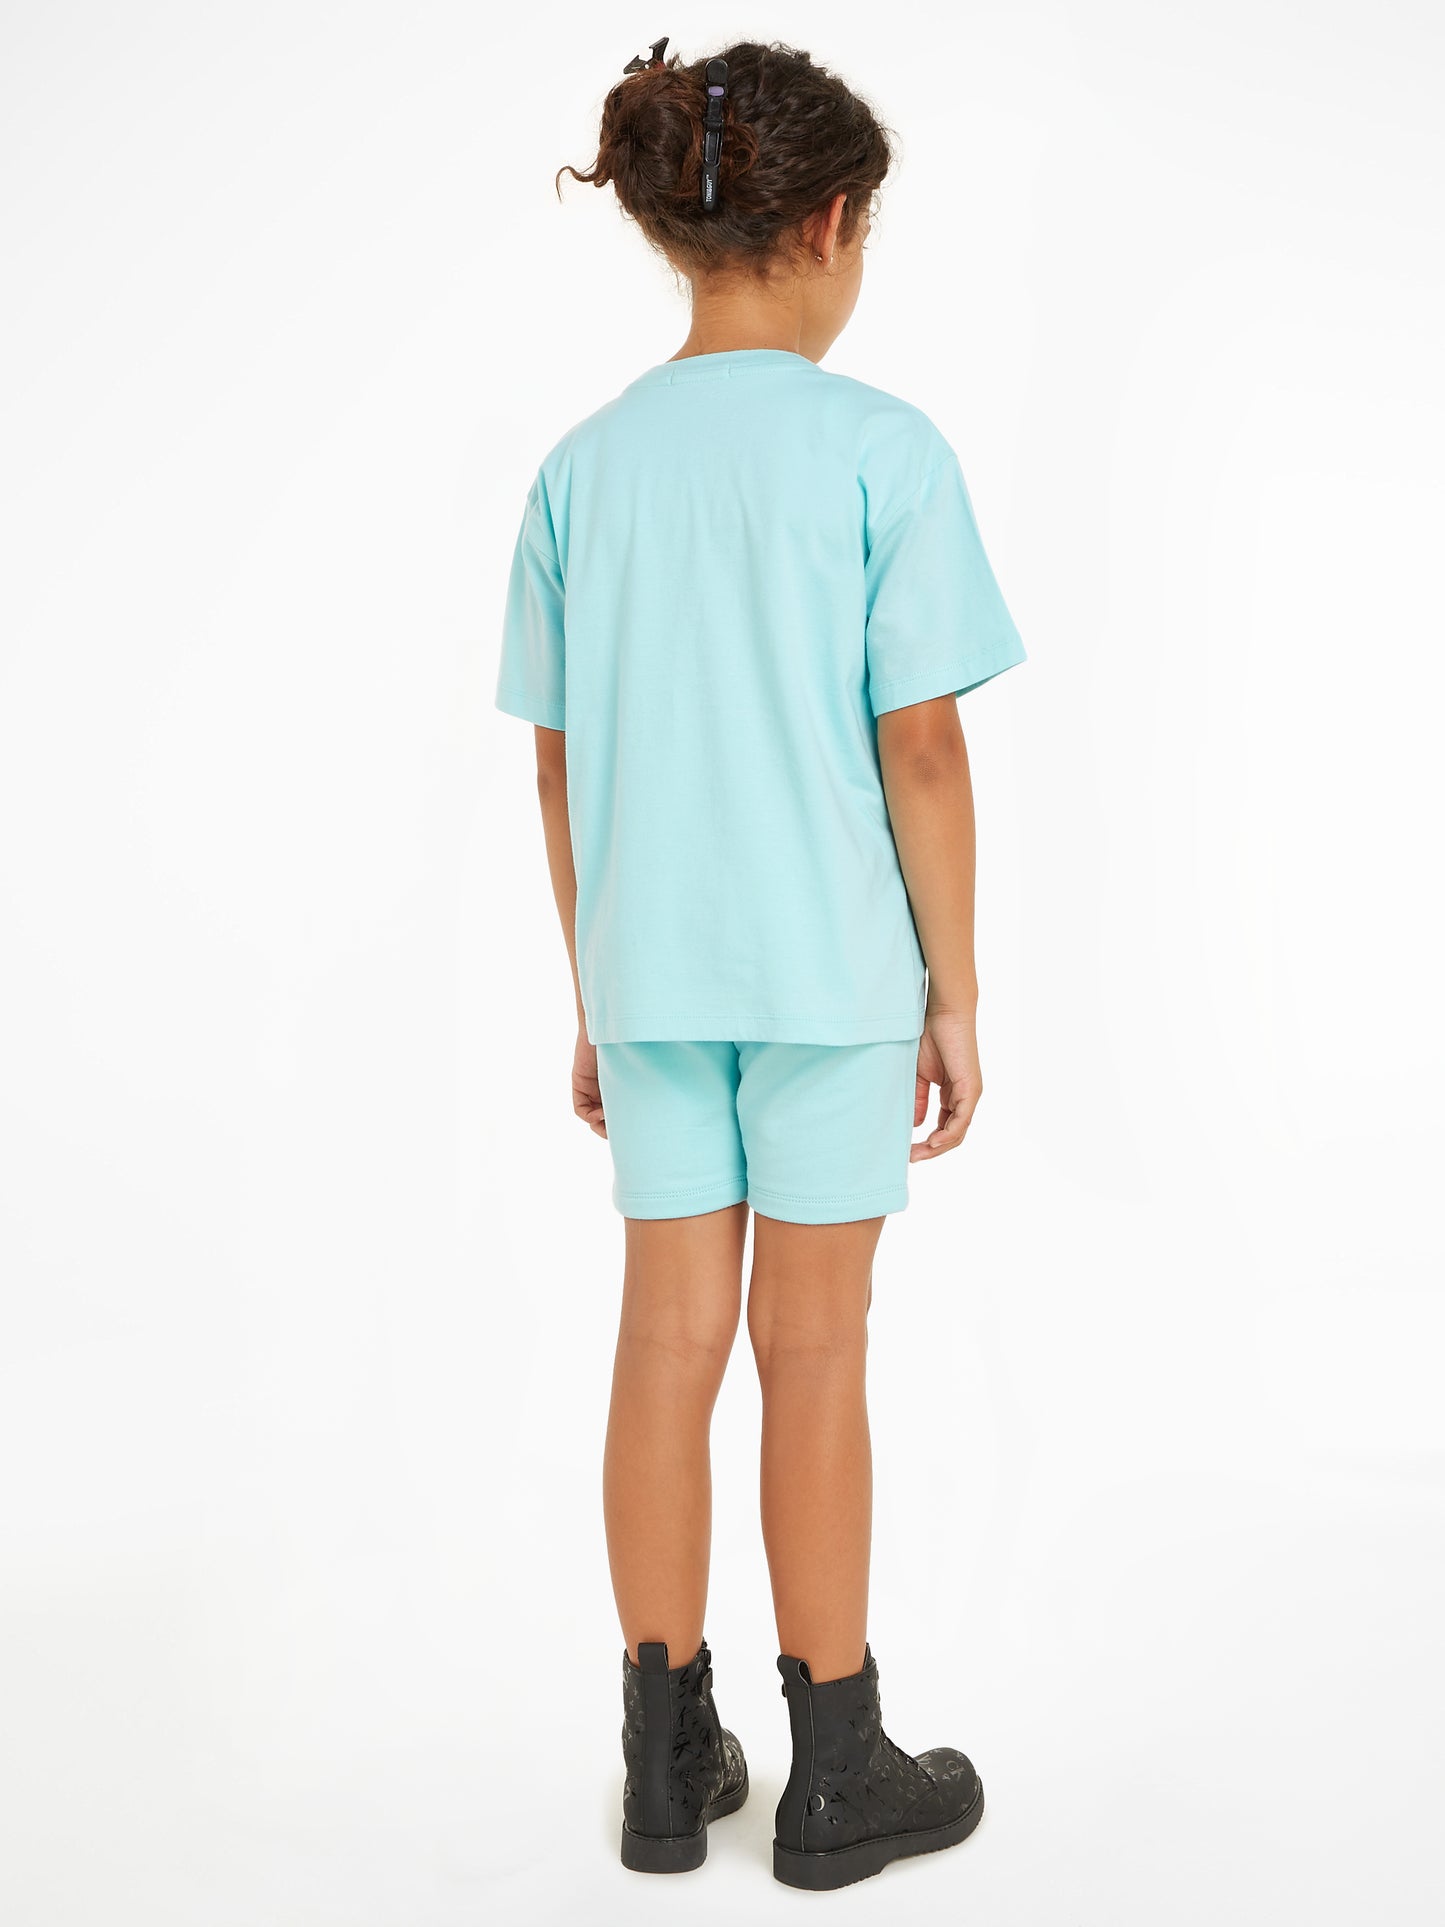 Calvin Klein Aqua Shorts Set